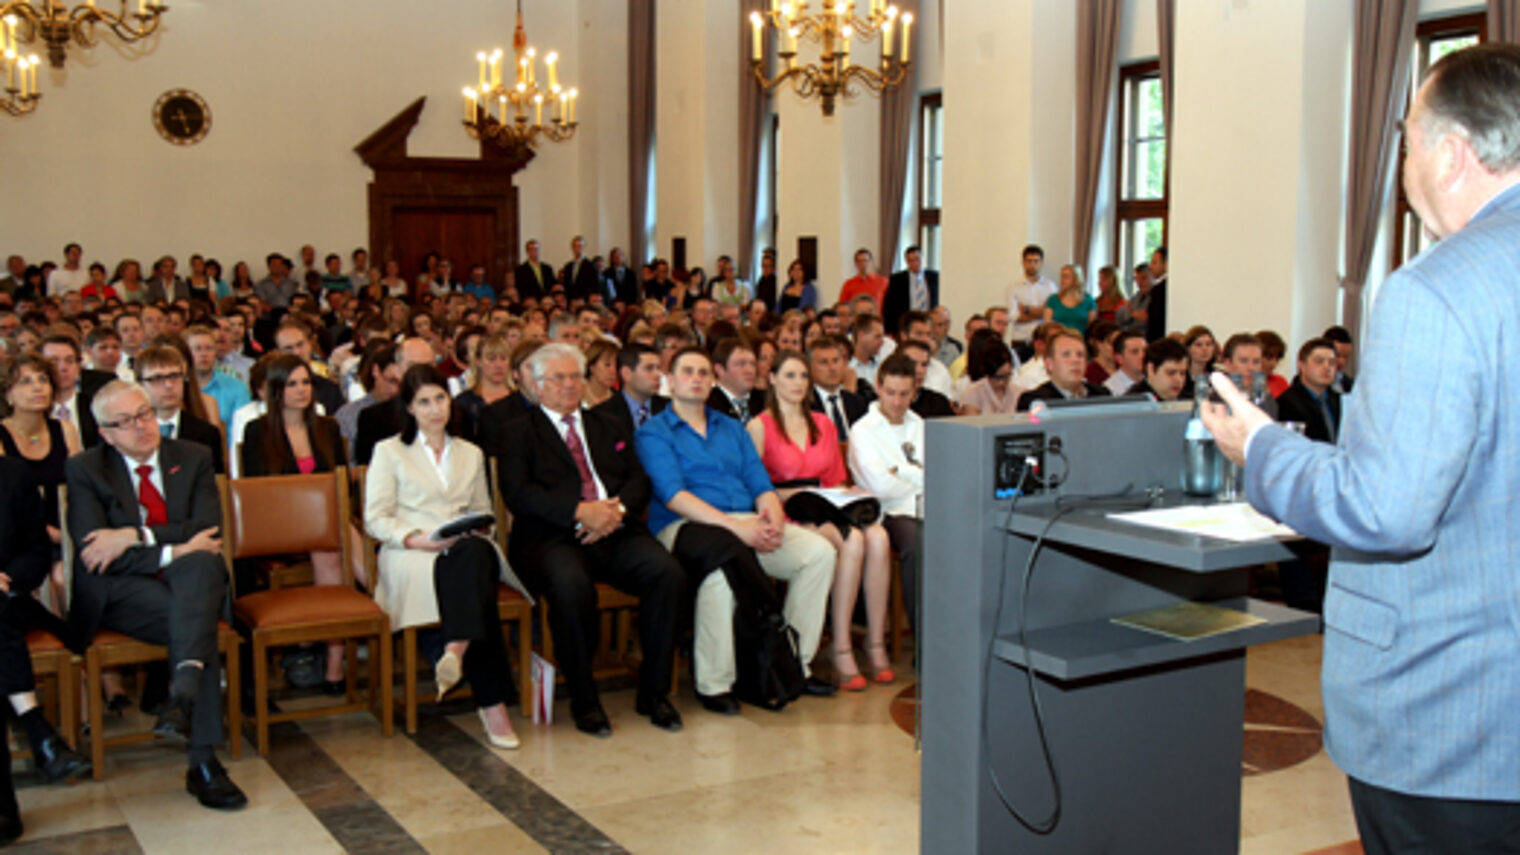 Abschlussfeier im Ludwig-Erhard-Festsaal des Bayerischen Wirtschaftsministeriums